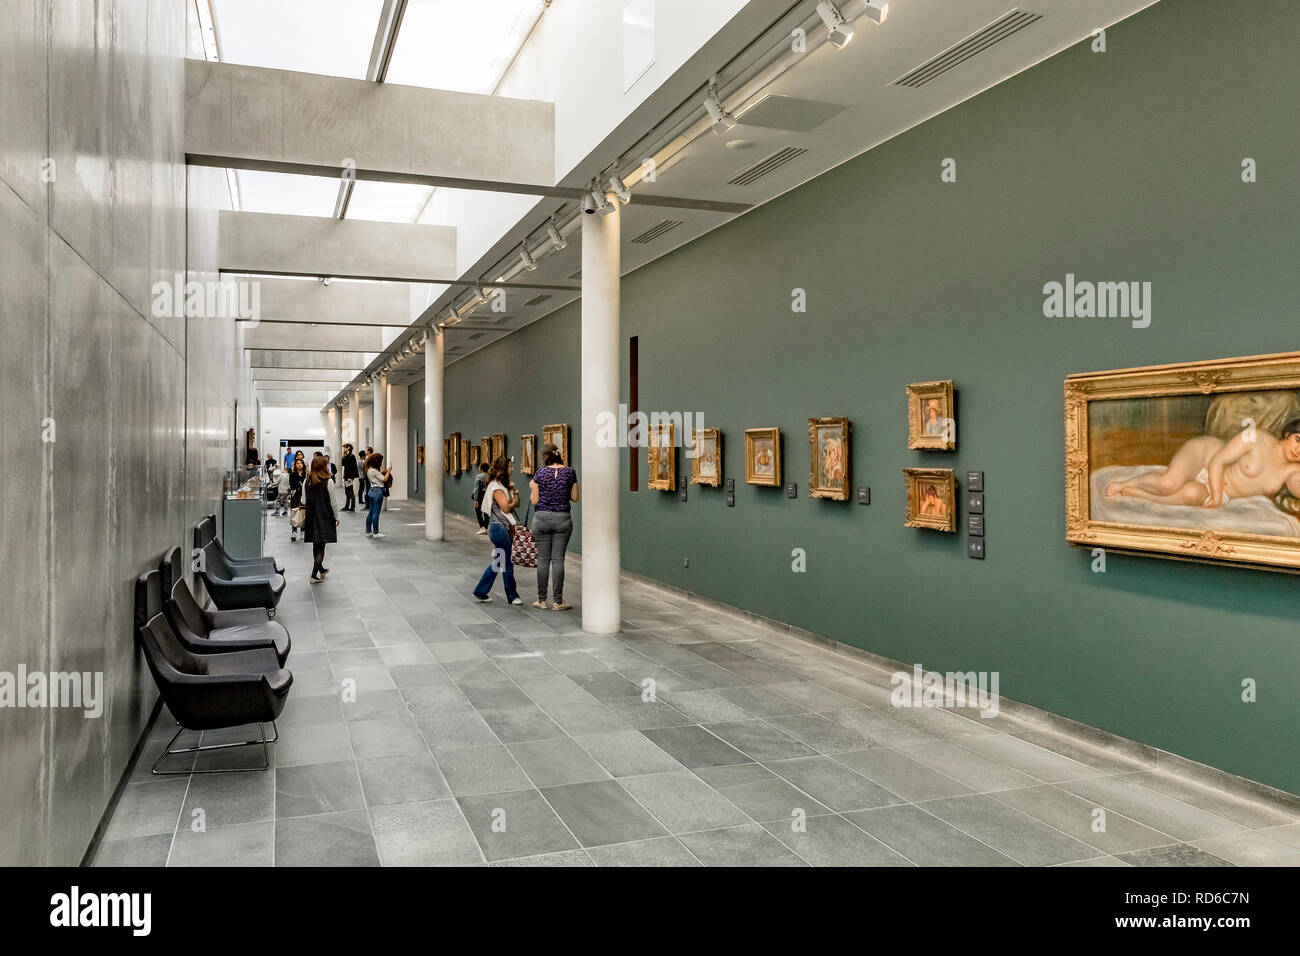 Die Menschen bewundern die impressionistischen Gemälde, die im Untergeschoss des Musée de l'Orangerie in Paris, Frankreich, untergebracht sind Stockfoto